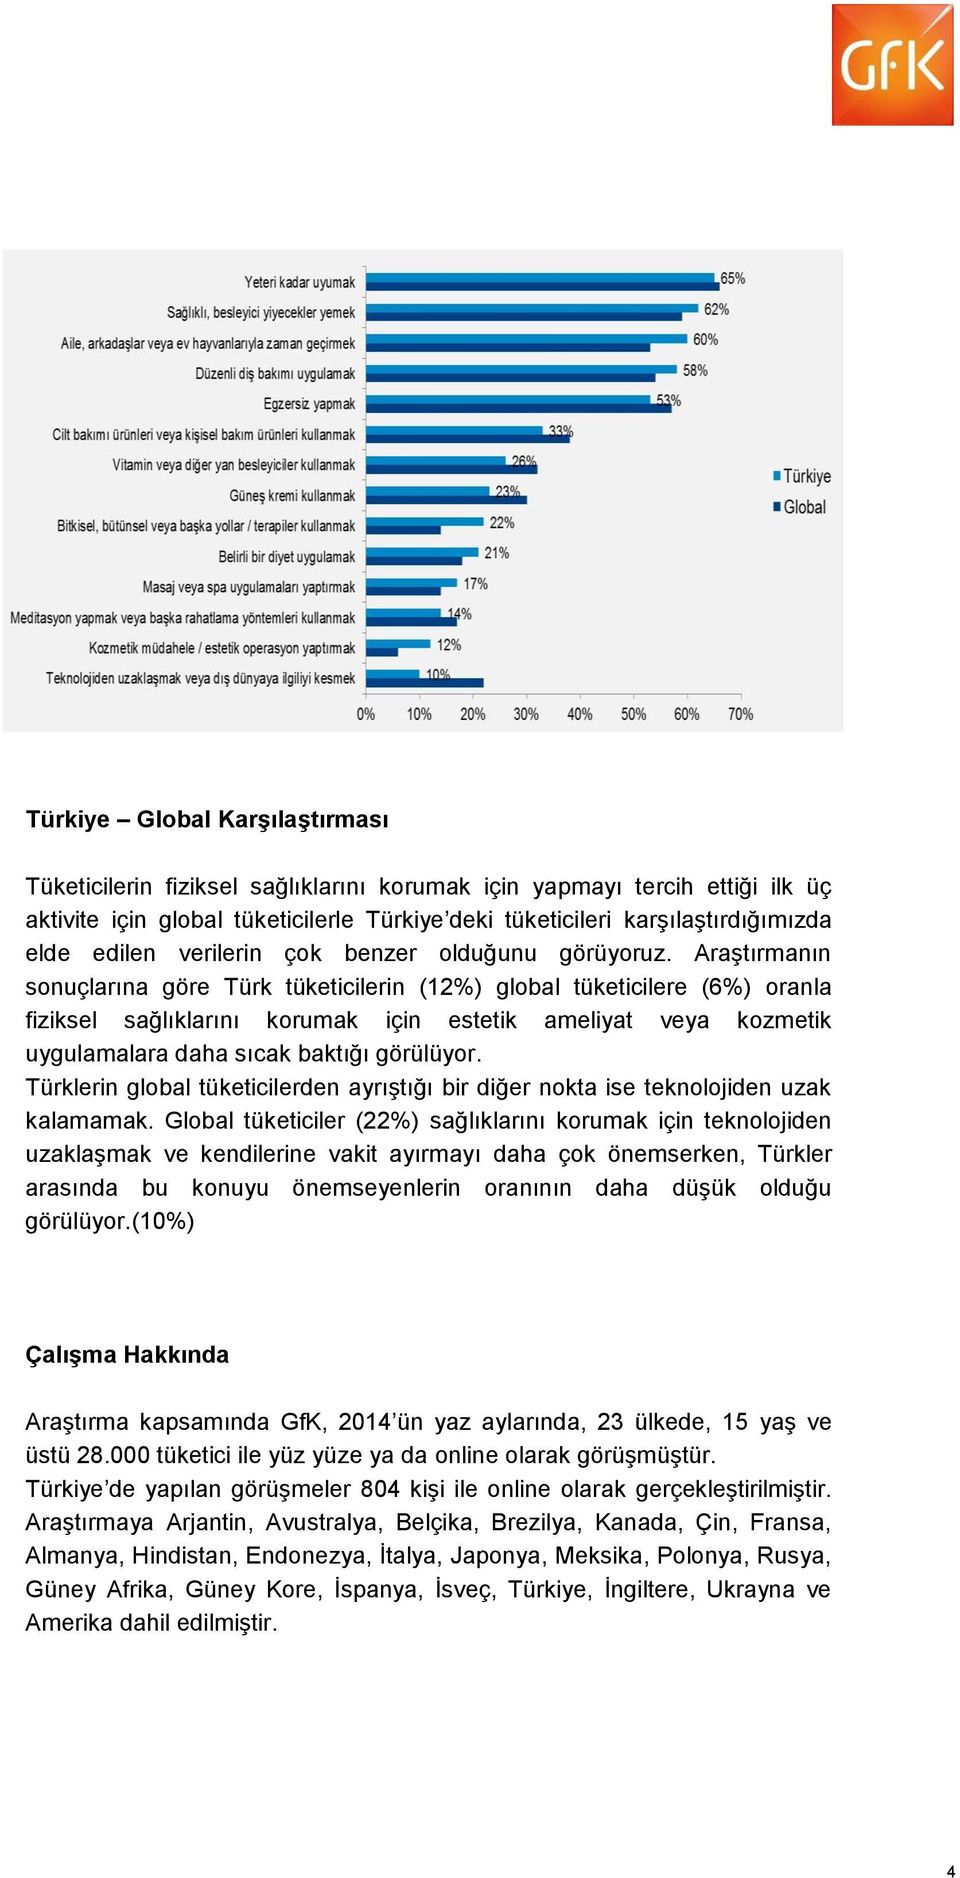 Araştırmanın sonuçlarına göre Türk tüketicilerin (12%) global tüketicilere (6%) oranla fiziksel sağlıklarını korumak için estetik ameliyat veya kozmetik uygulamalara daha sıcak baktığı görülüyor.